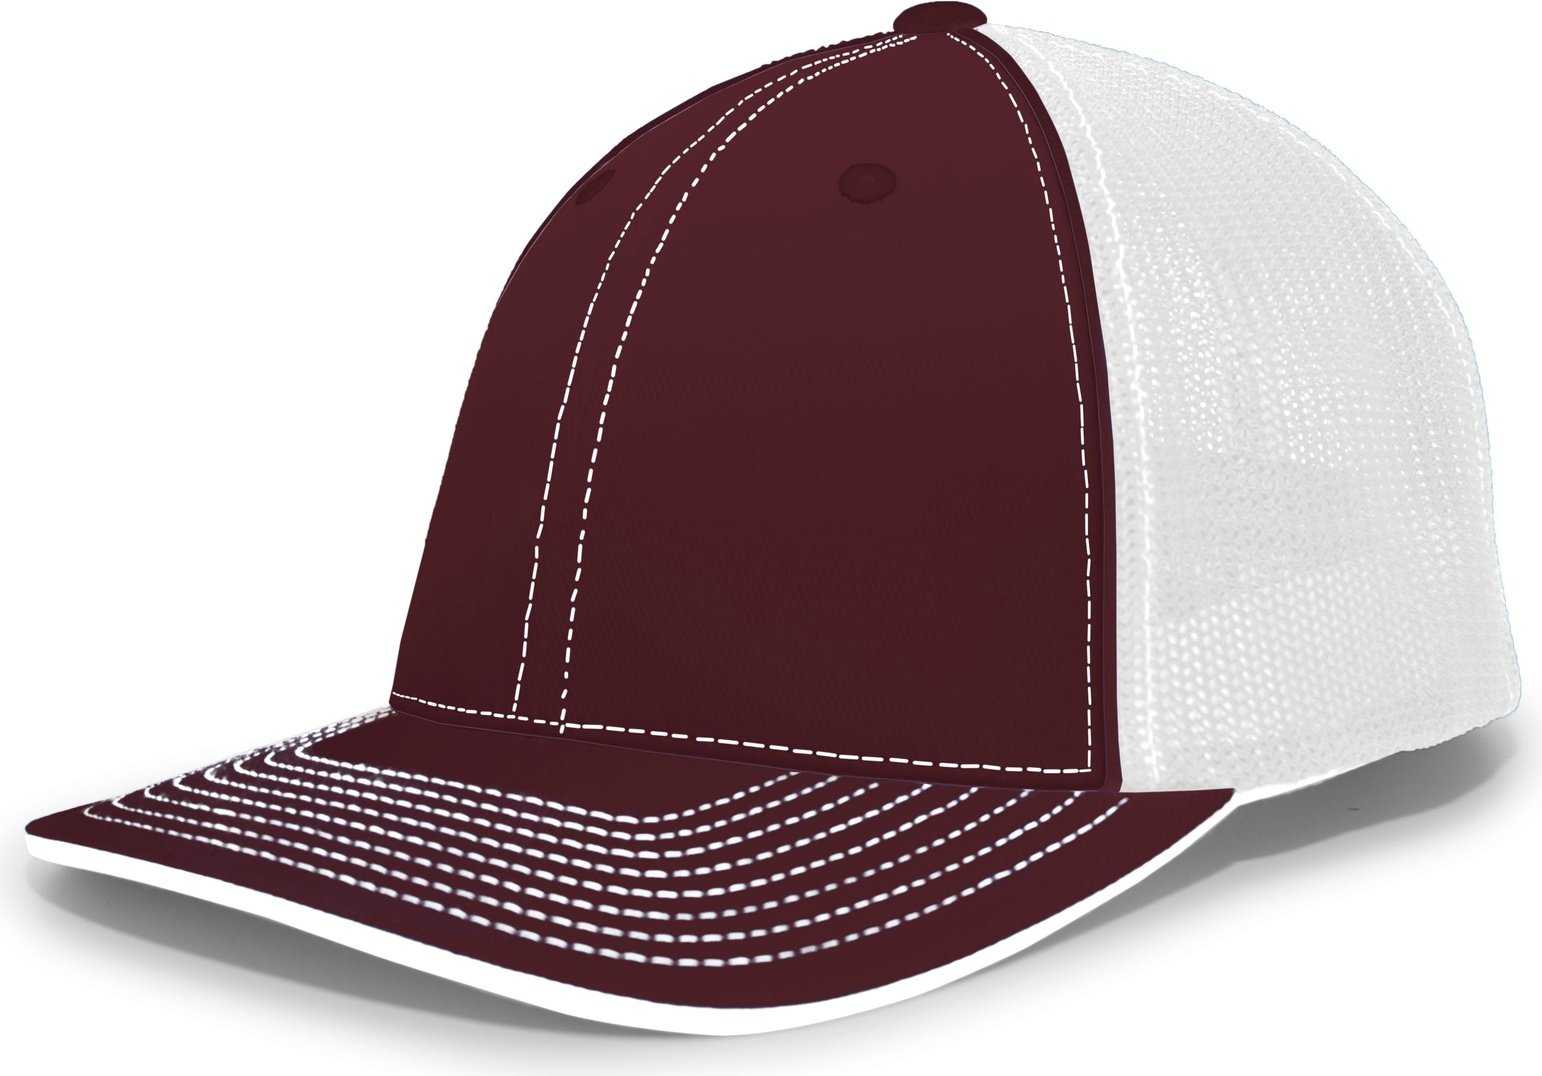 Pacific Headwear 404M Trucker Flexfit Cap - Maroon White - HIT a Double